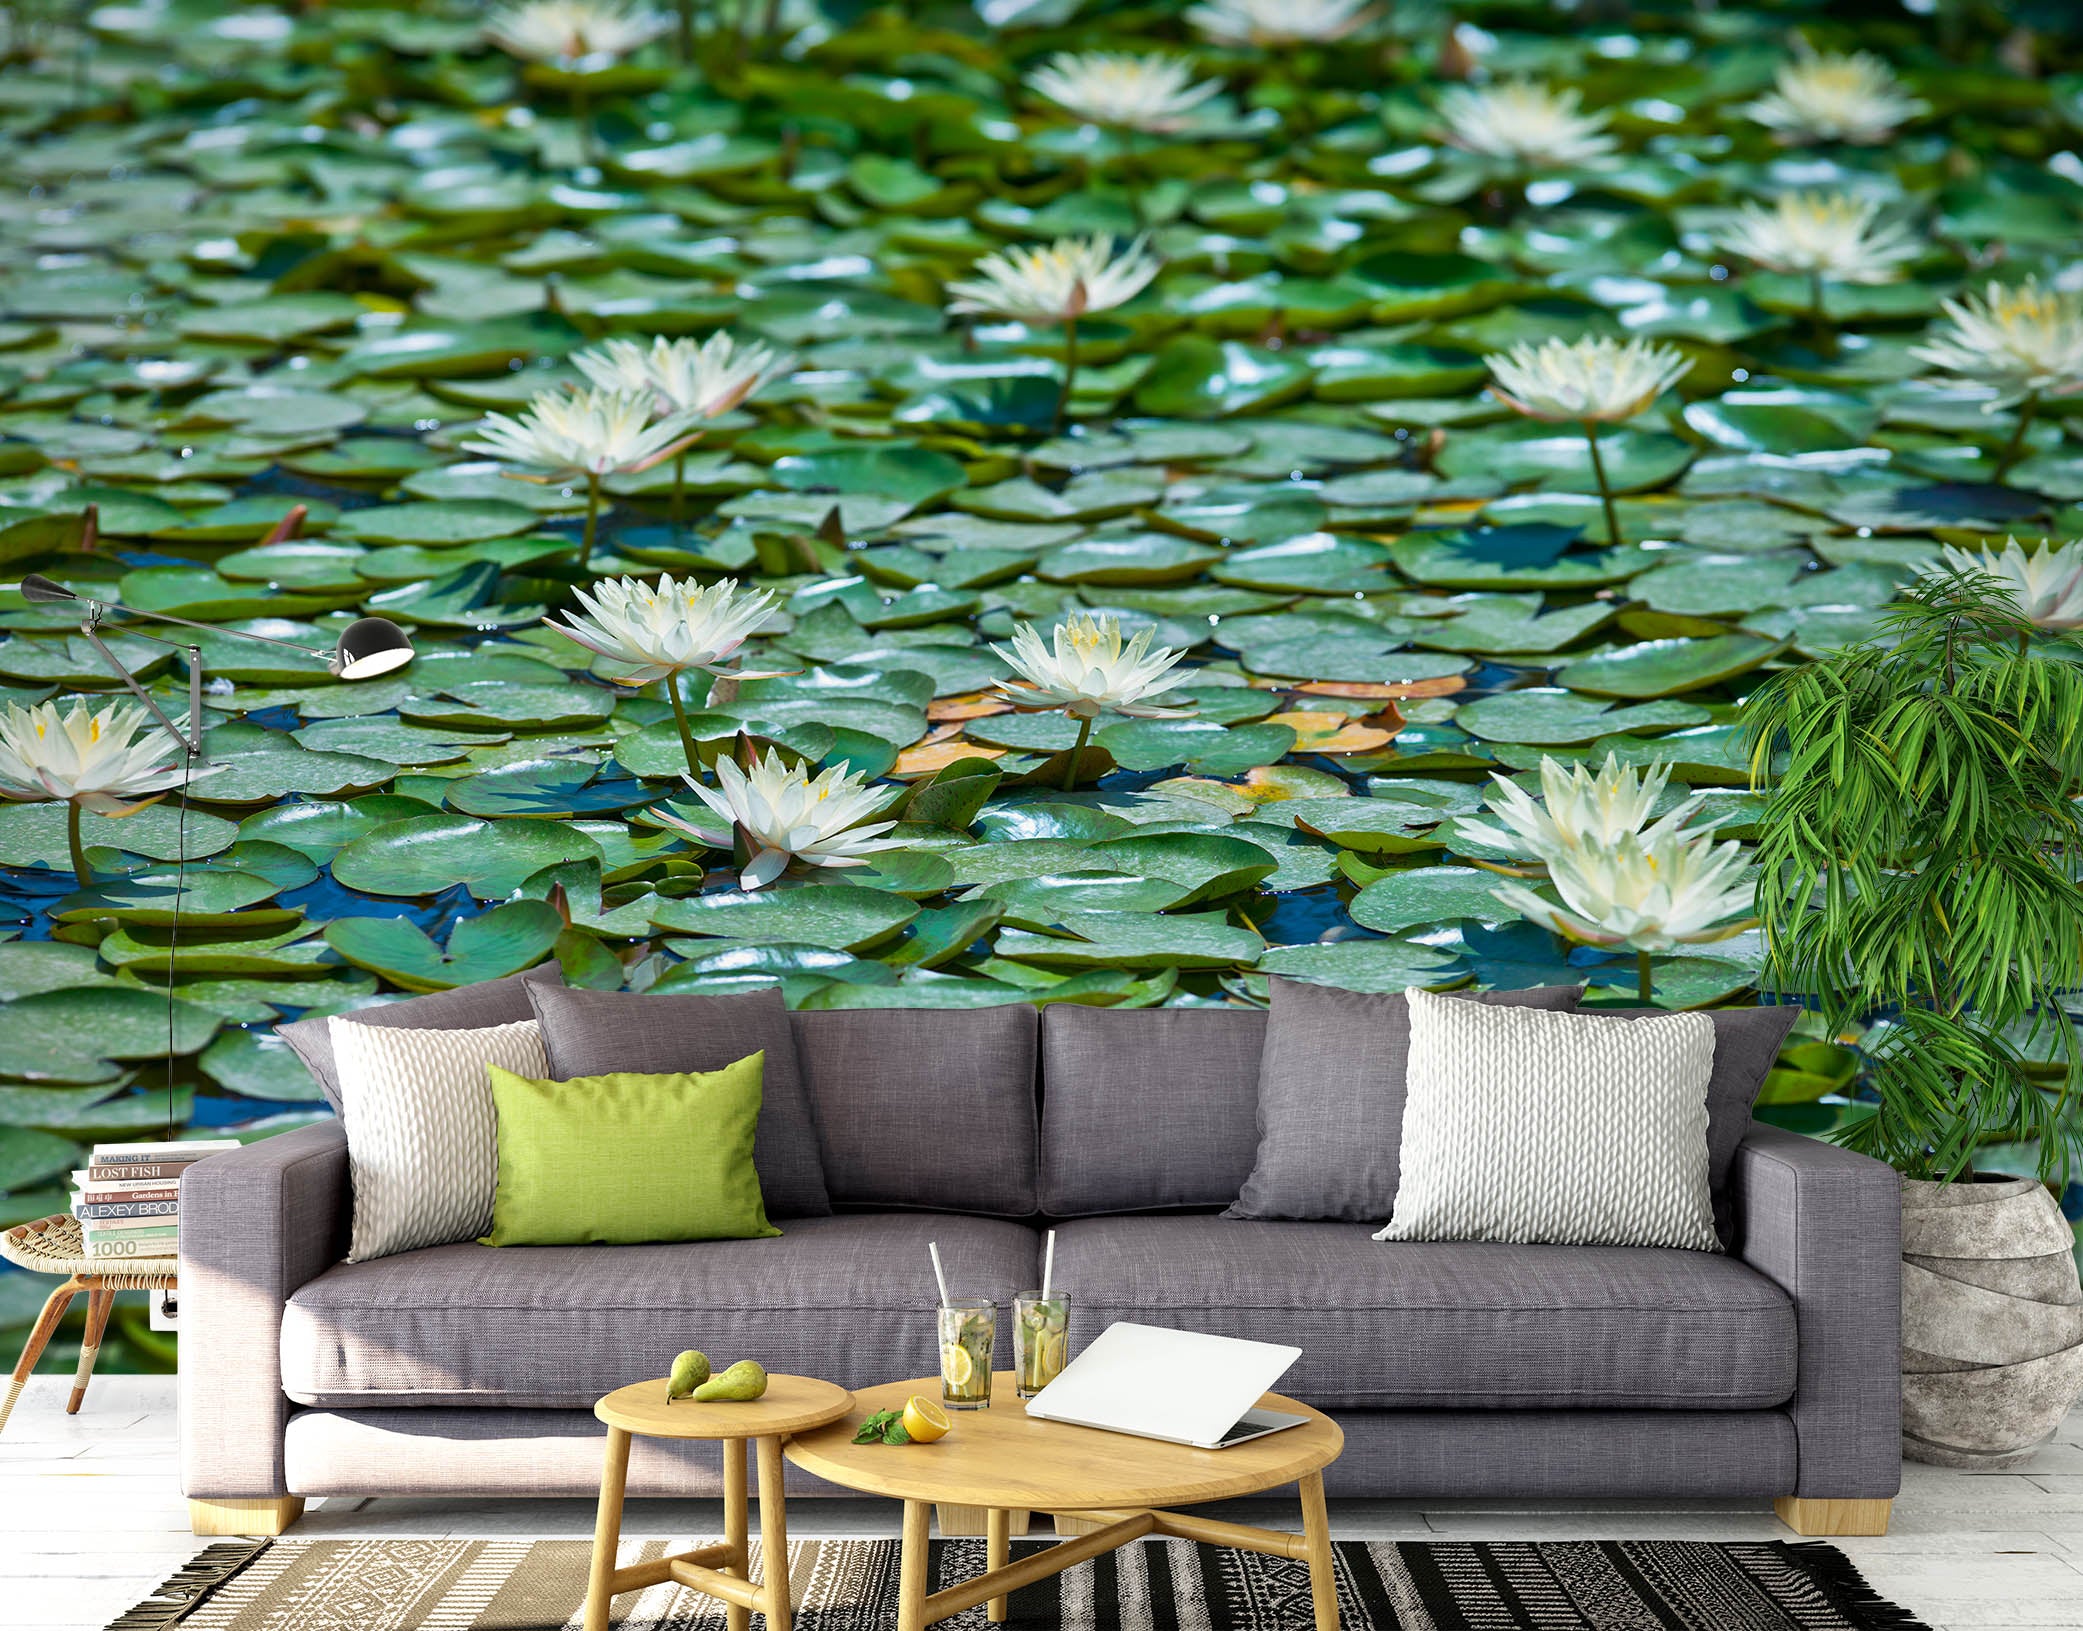 3D Pond Water Lily 6110 Assaf Frank Wall Mural Wall Murals